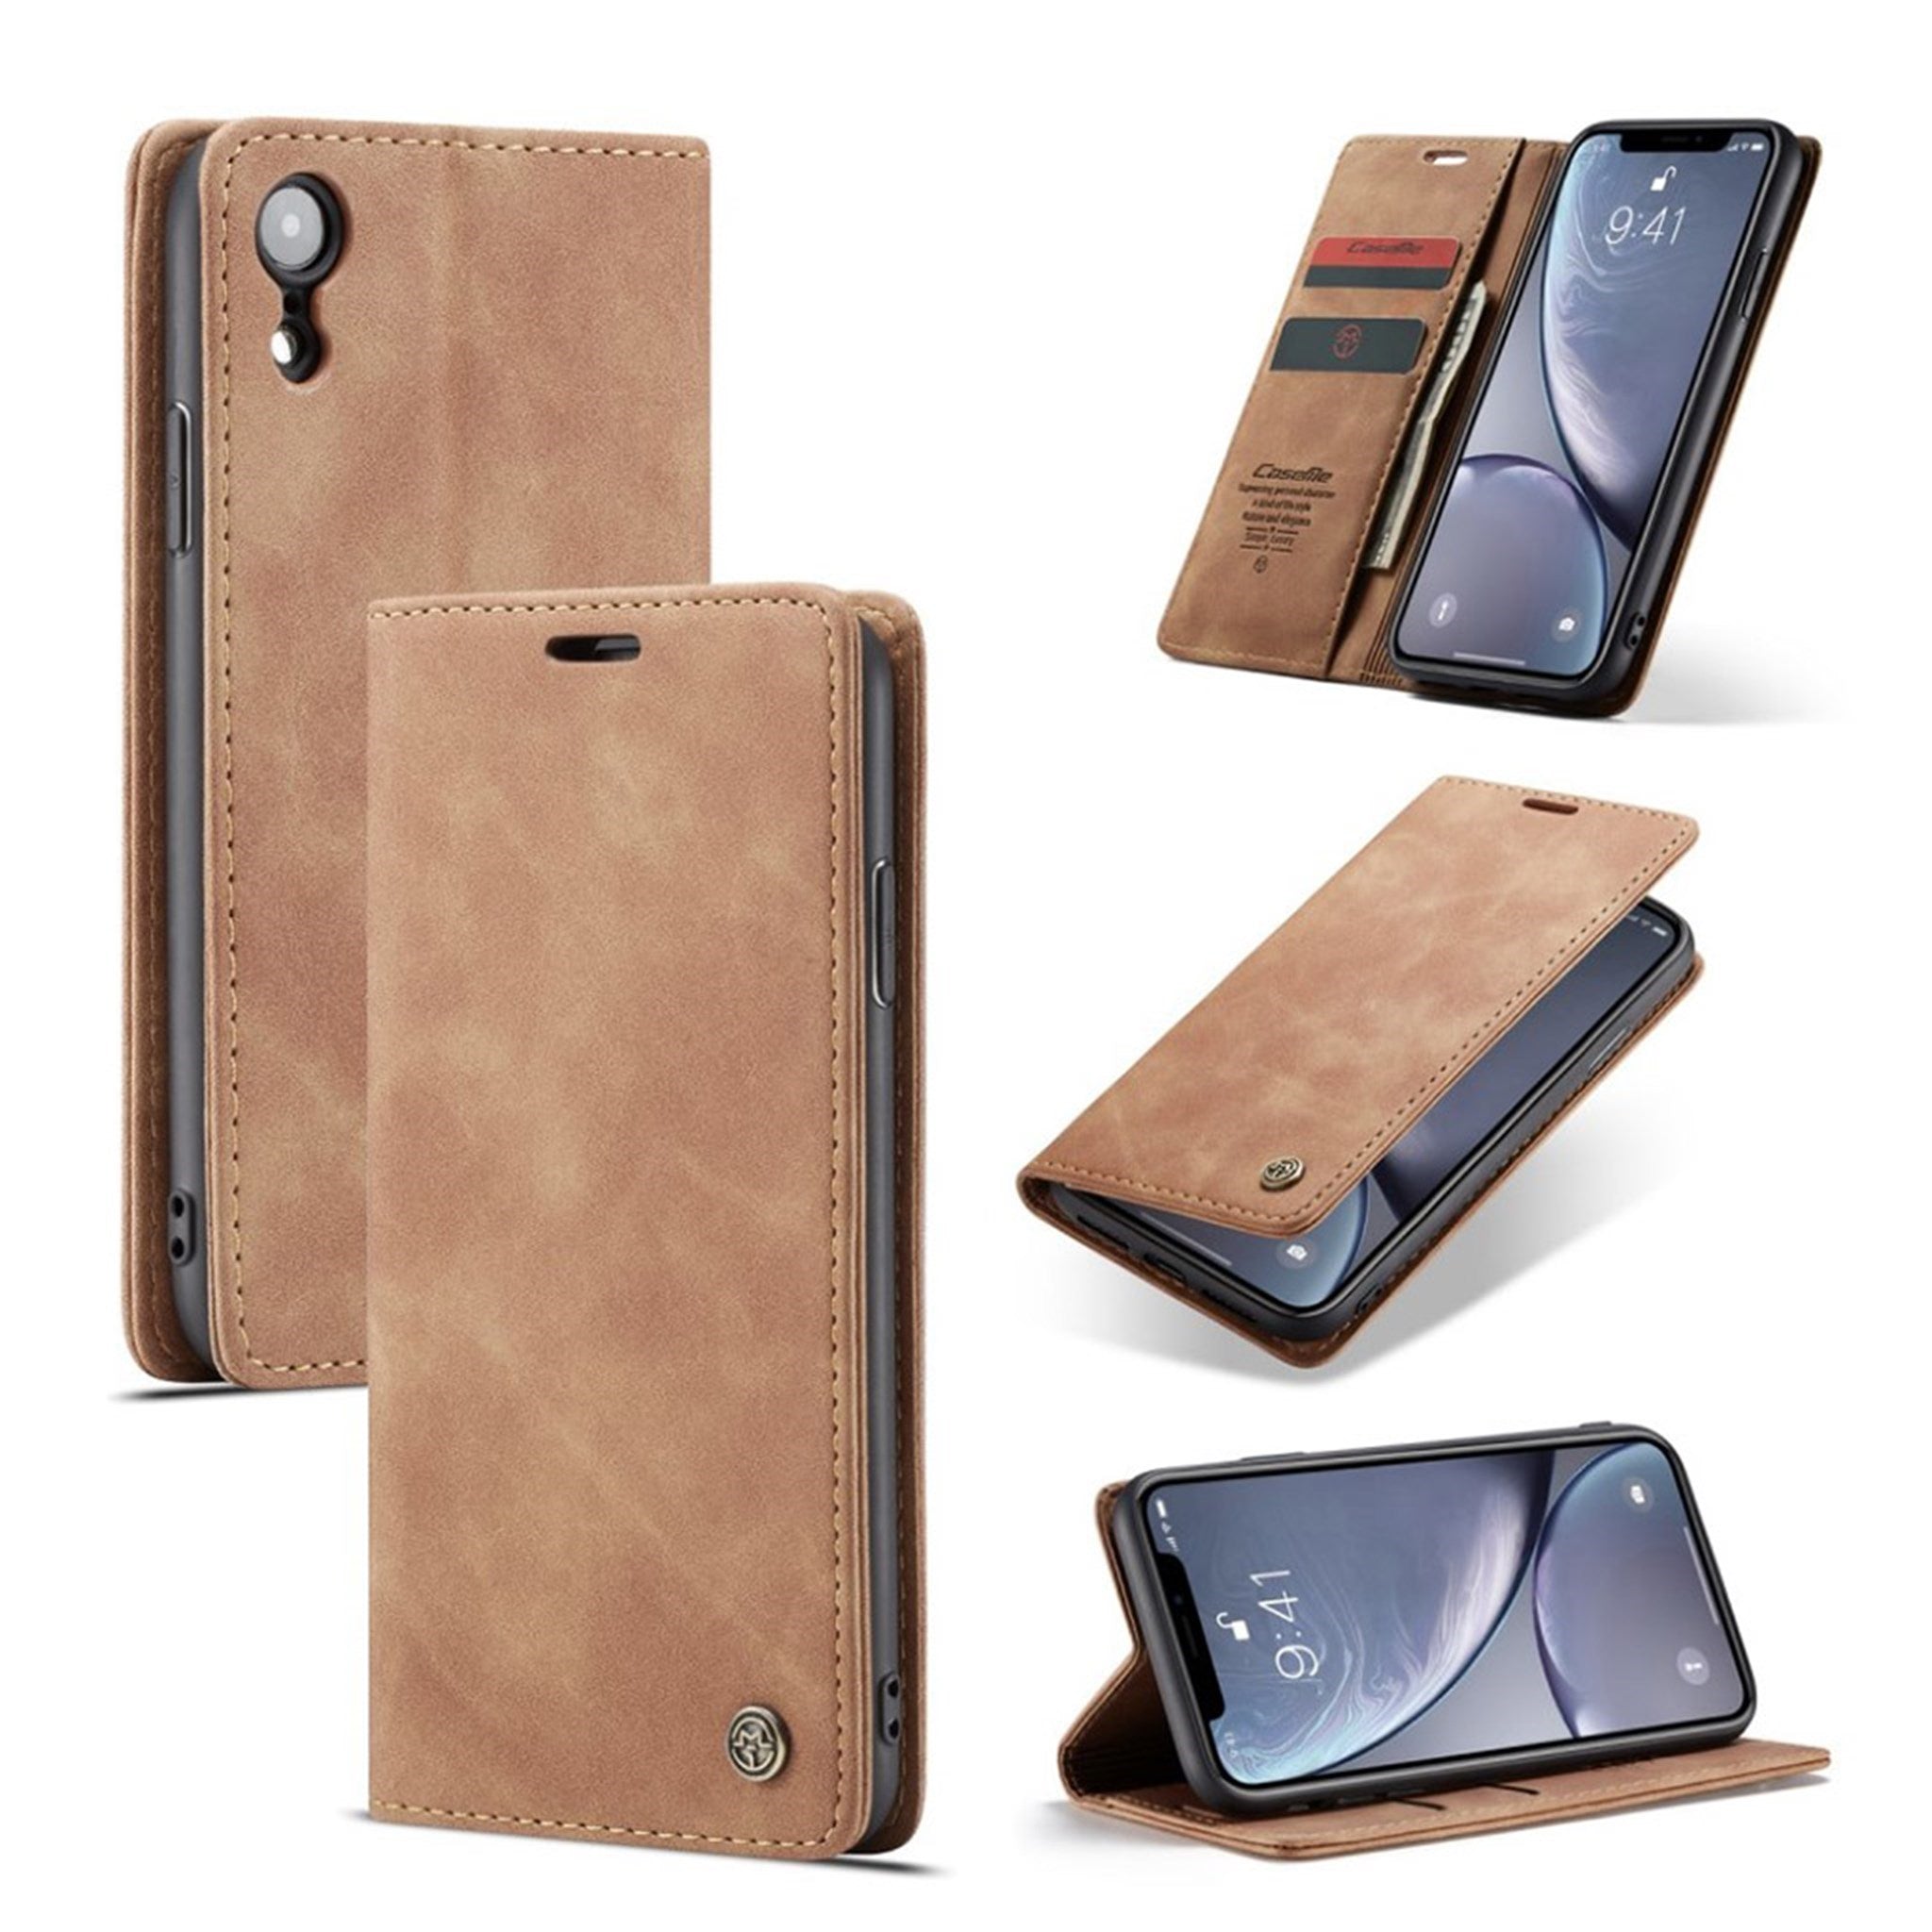 CASEME iPhone Xr leather flip case - Khaki